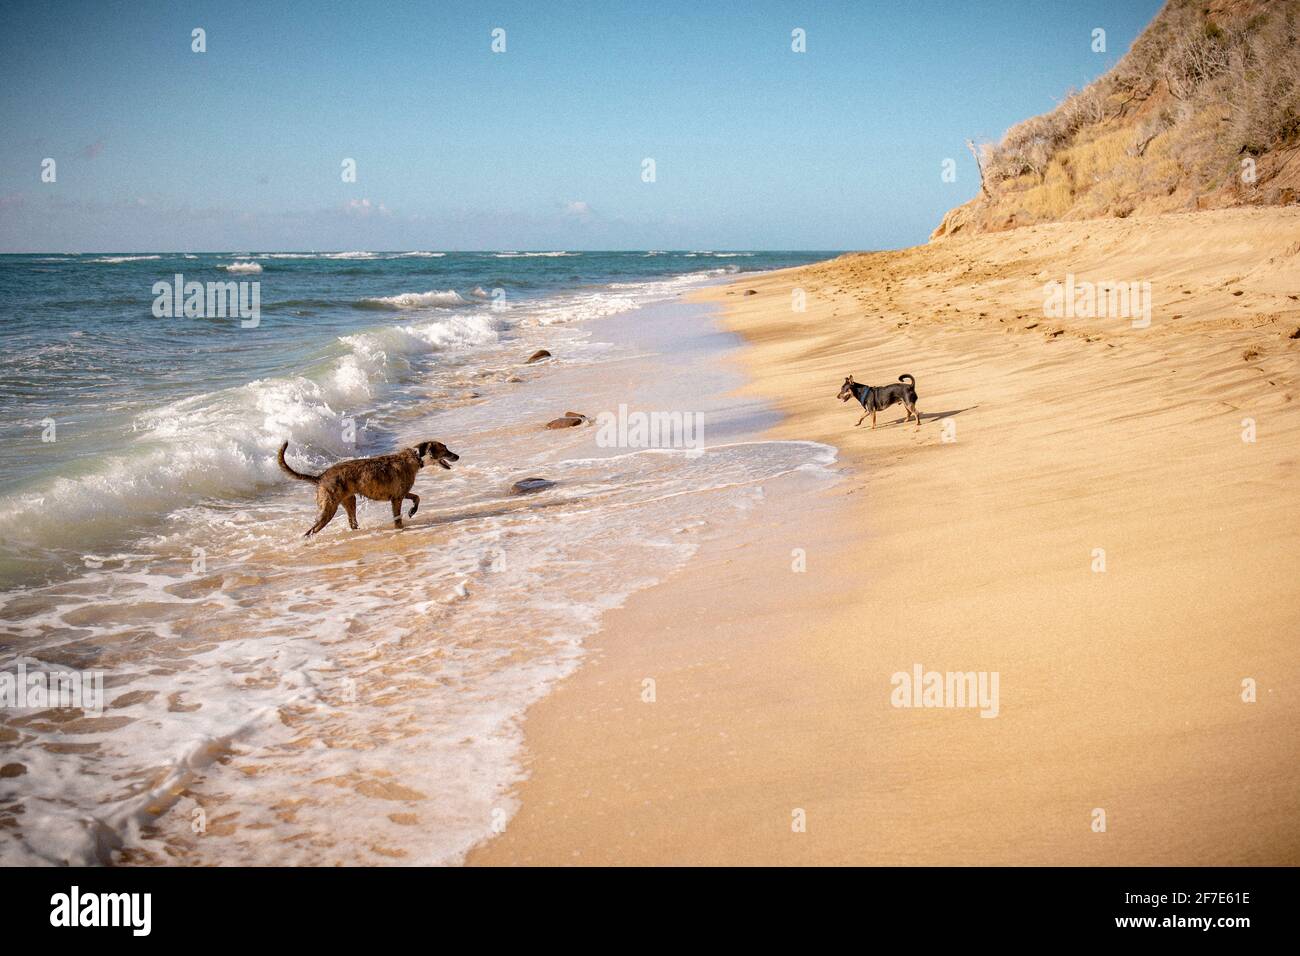 Une journée ensoleillée sur la plage à Hawaï avec deux chiens. Jouer dans les vagues Banque D'Images